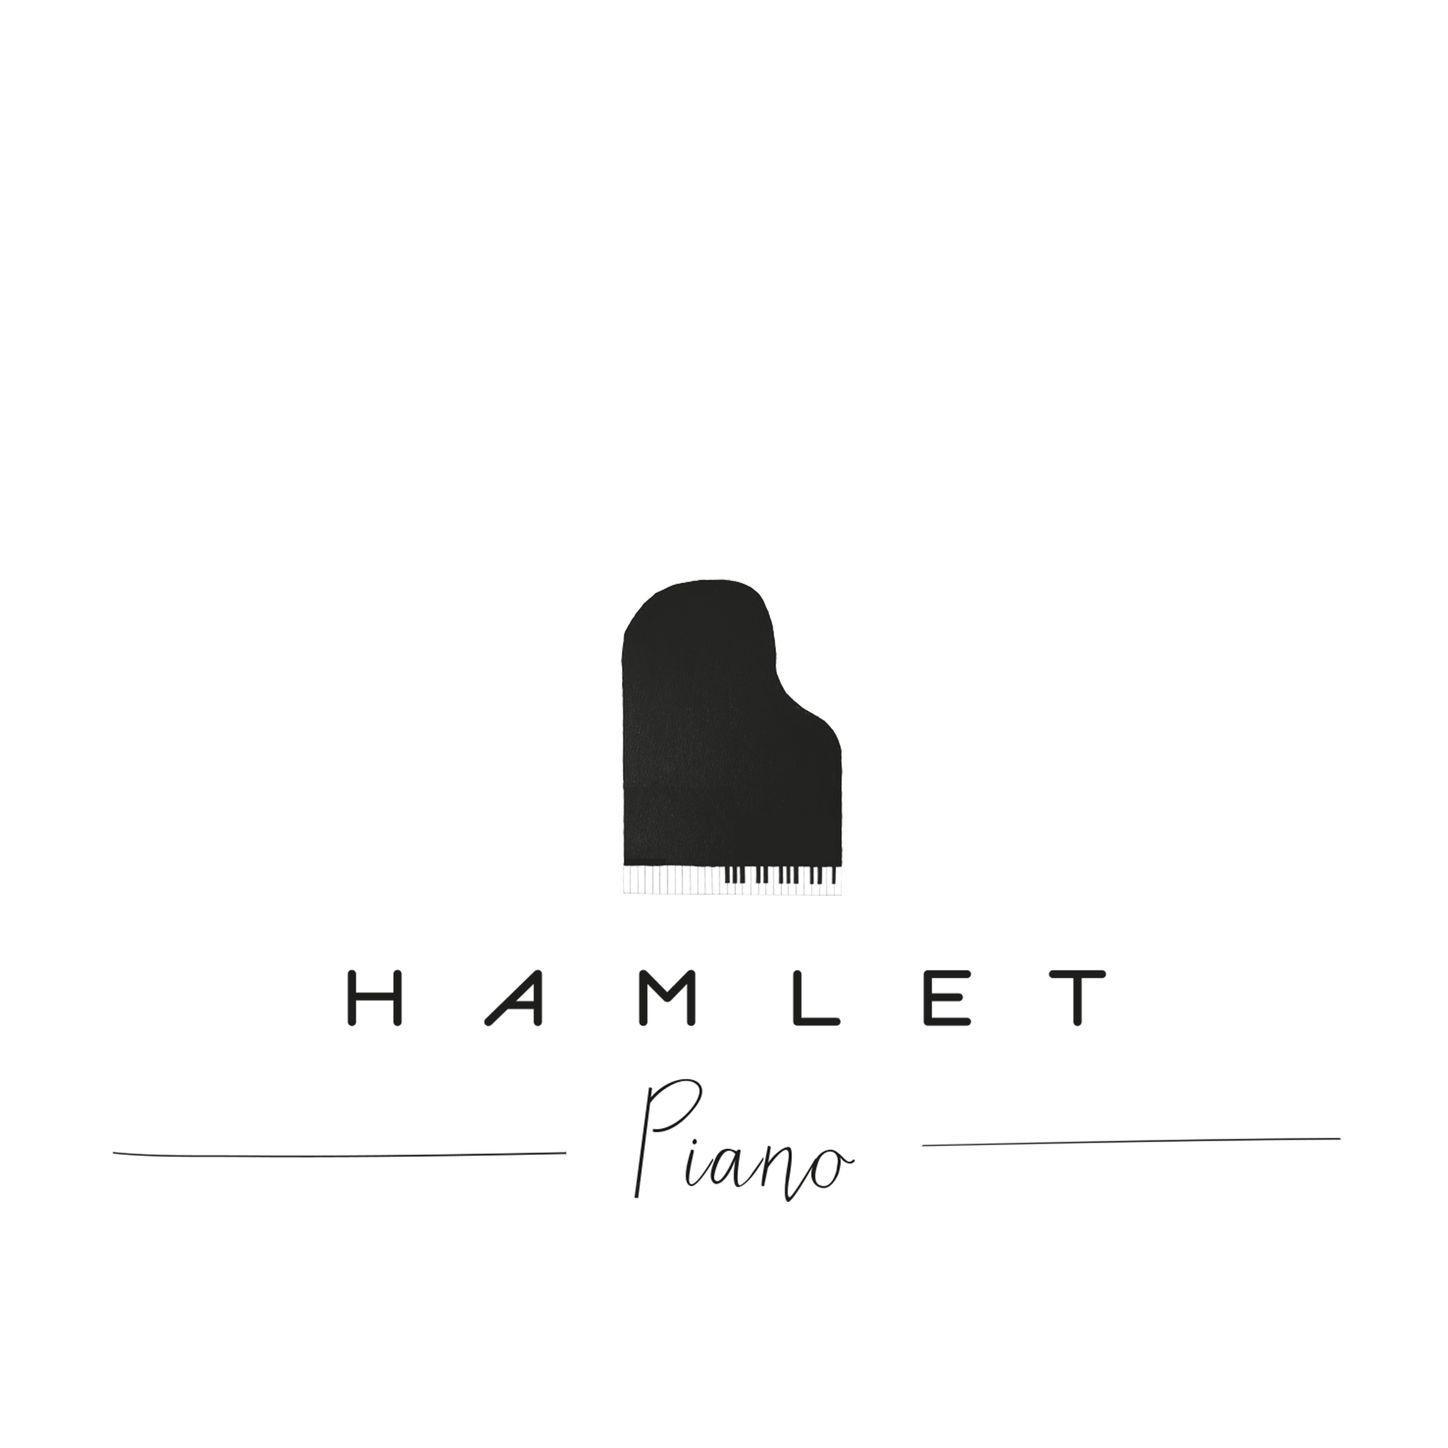 Hamlet - Hypnotized